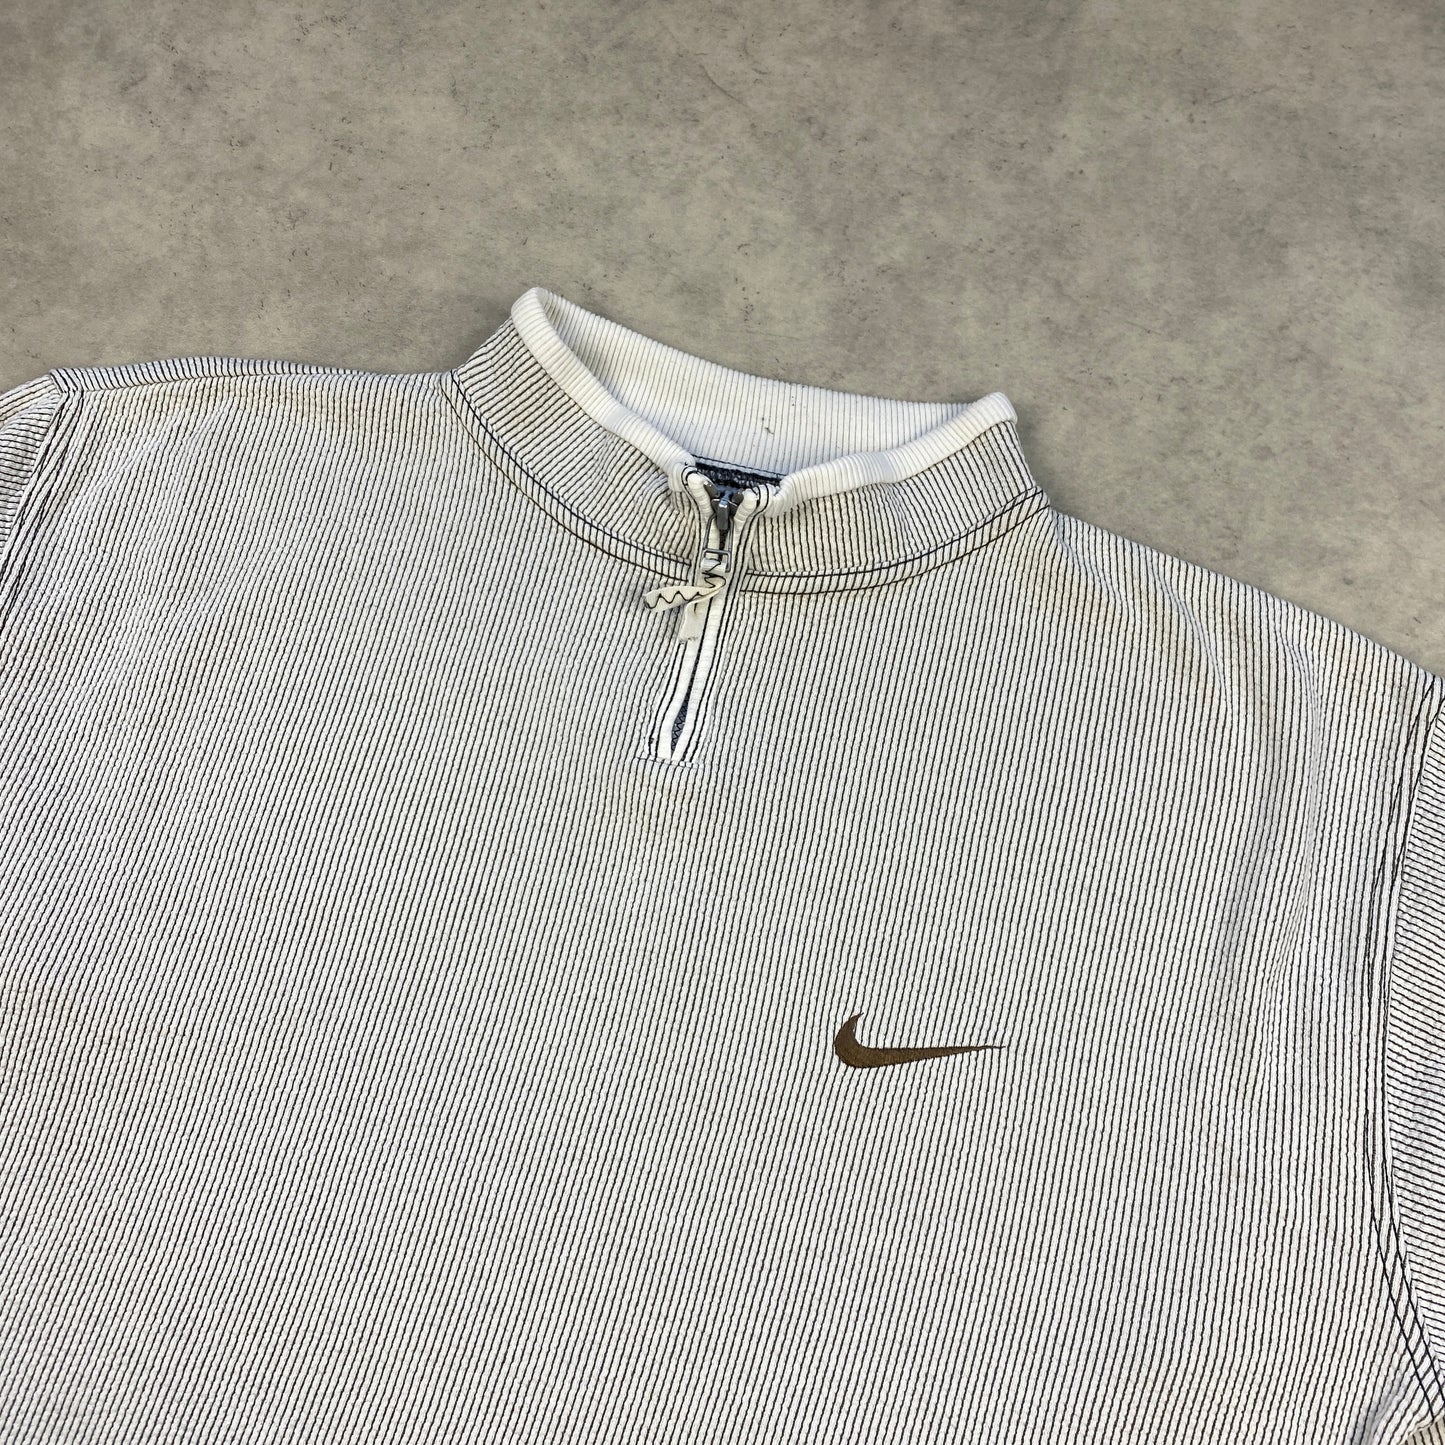 Nike RARE 1/4 zip sweater (S)